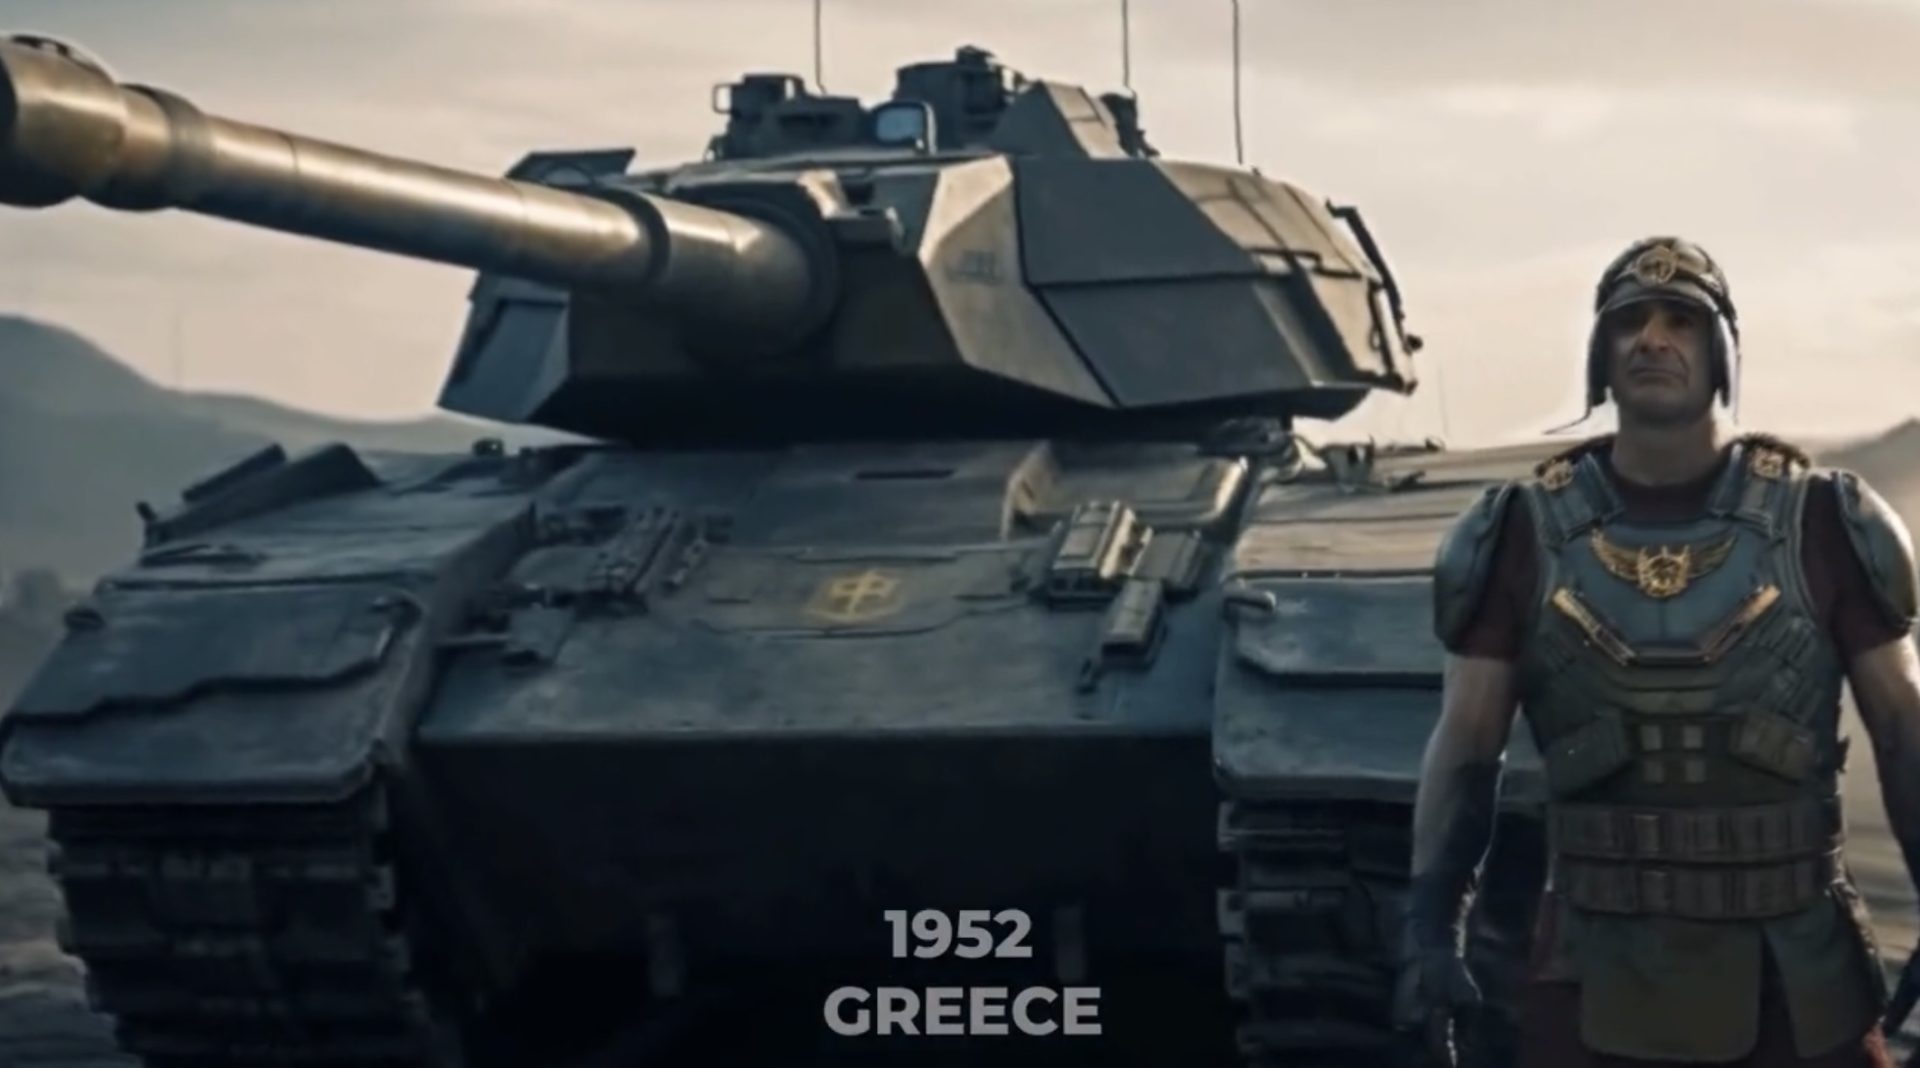 Σάλος στο Instagram με αποκαλυπτικό βιντεο με τους ηγέτες του ΝΑΤΟ που παρουσιάζει τον Μητσοτακη σαν καρικατούρα Ρωμαίου Αυτοκράτορα